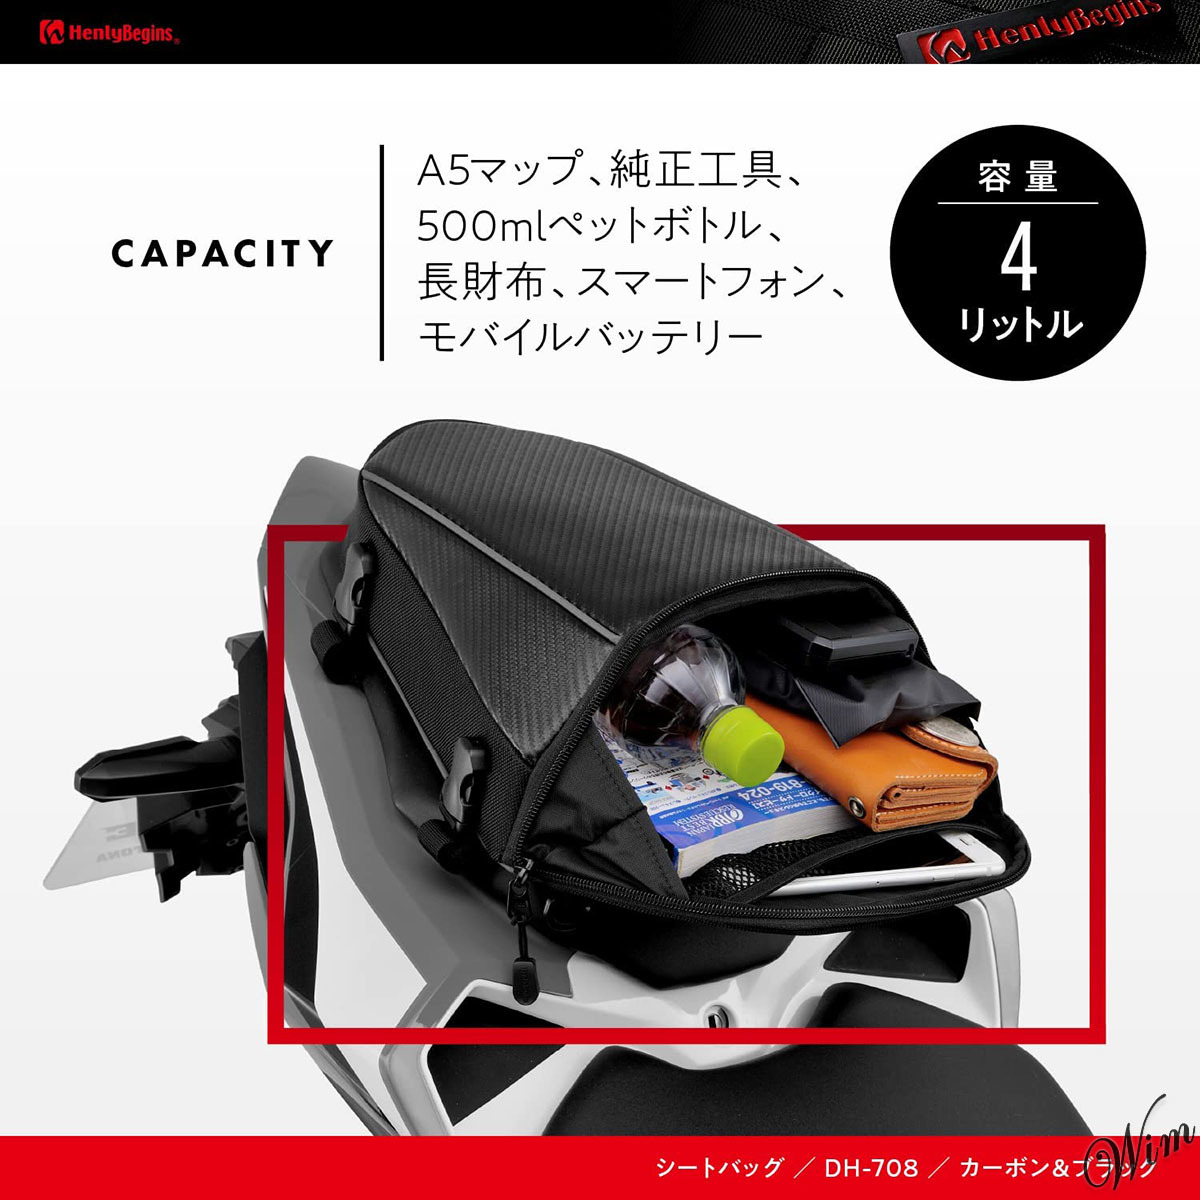 ◆簡単3ステップ装着◆ シートバッグ 容量4L レインカバー付属 ミニマルデザイン オートバイ アクセサリー スポーティ ツーリング